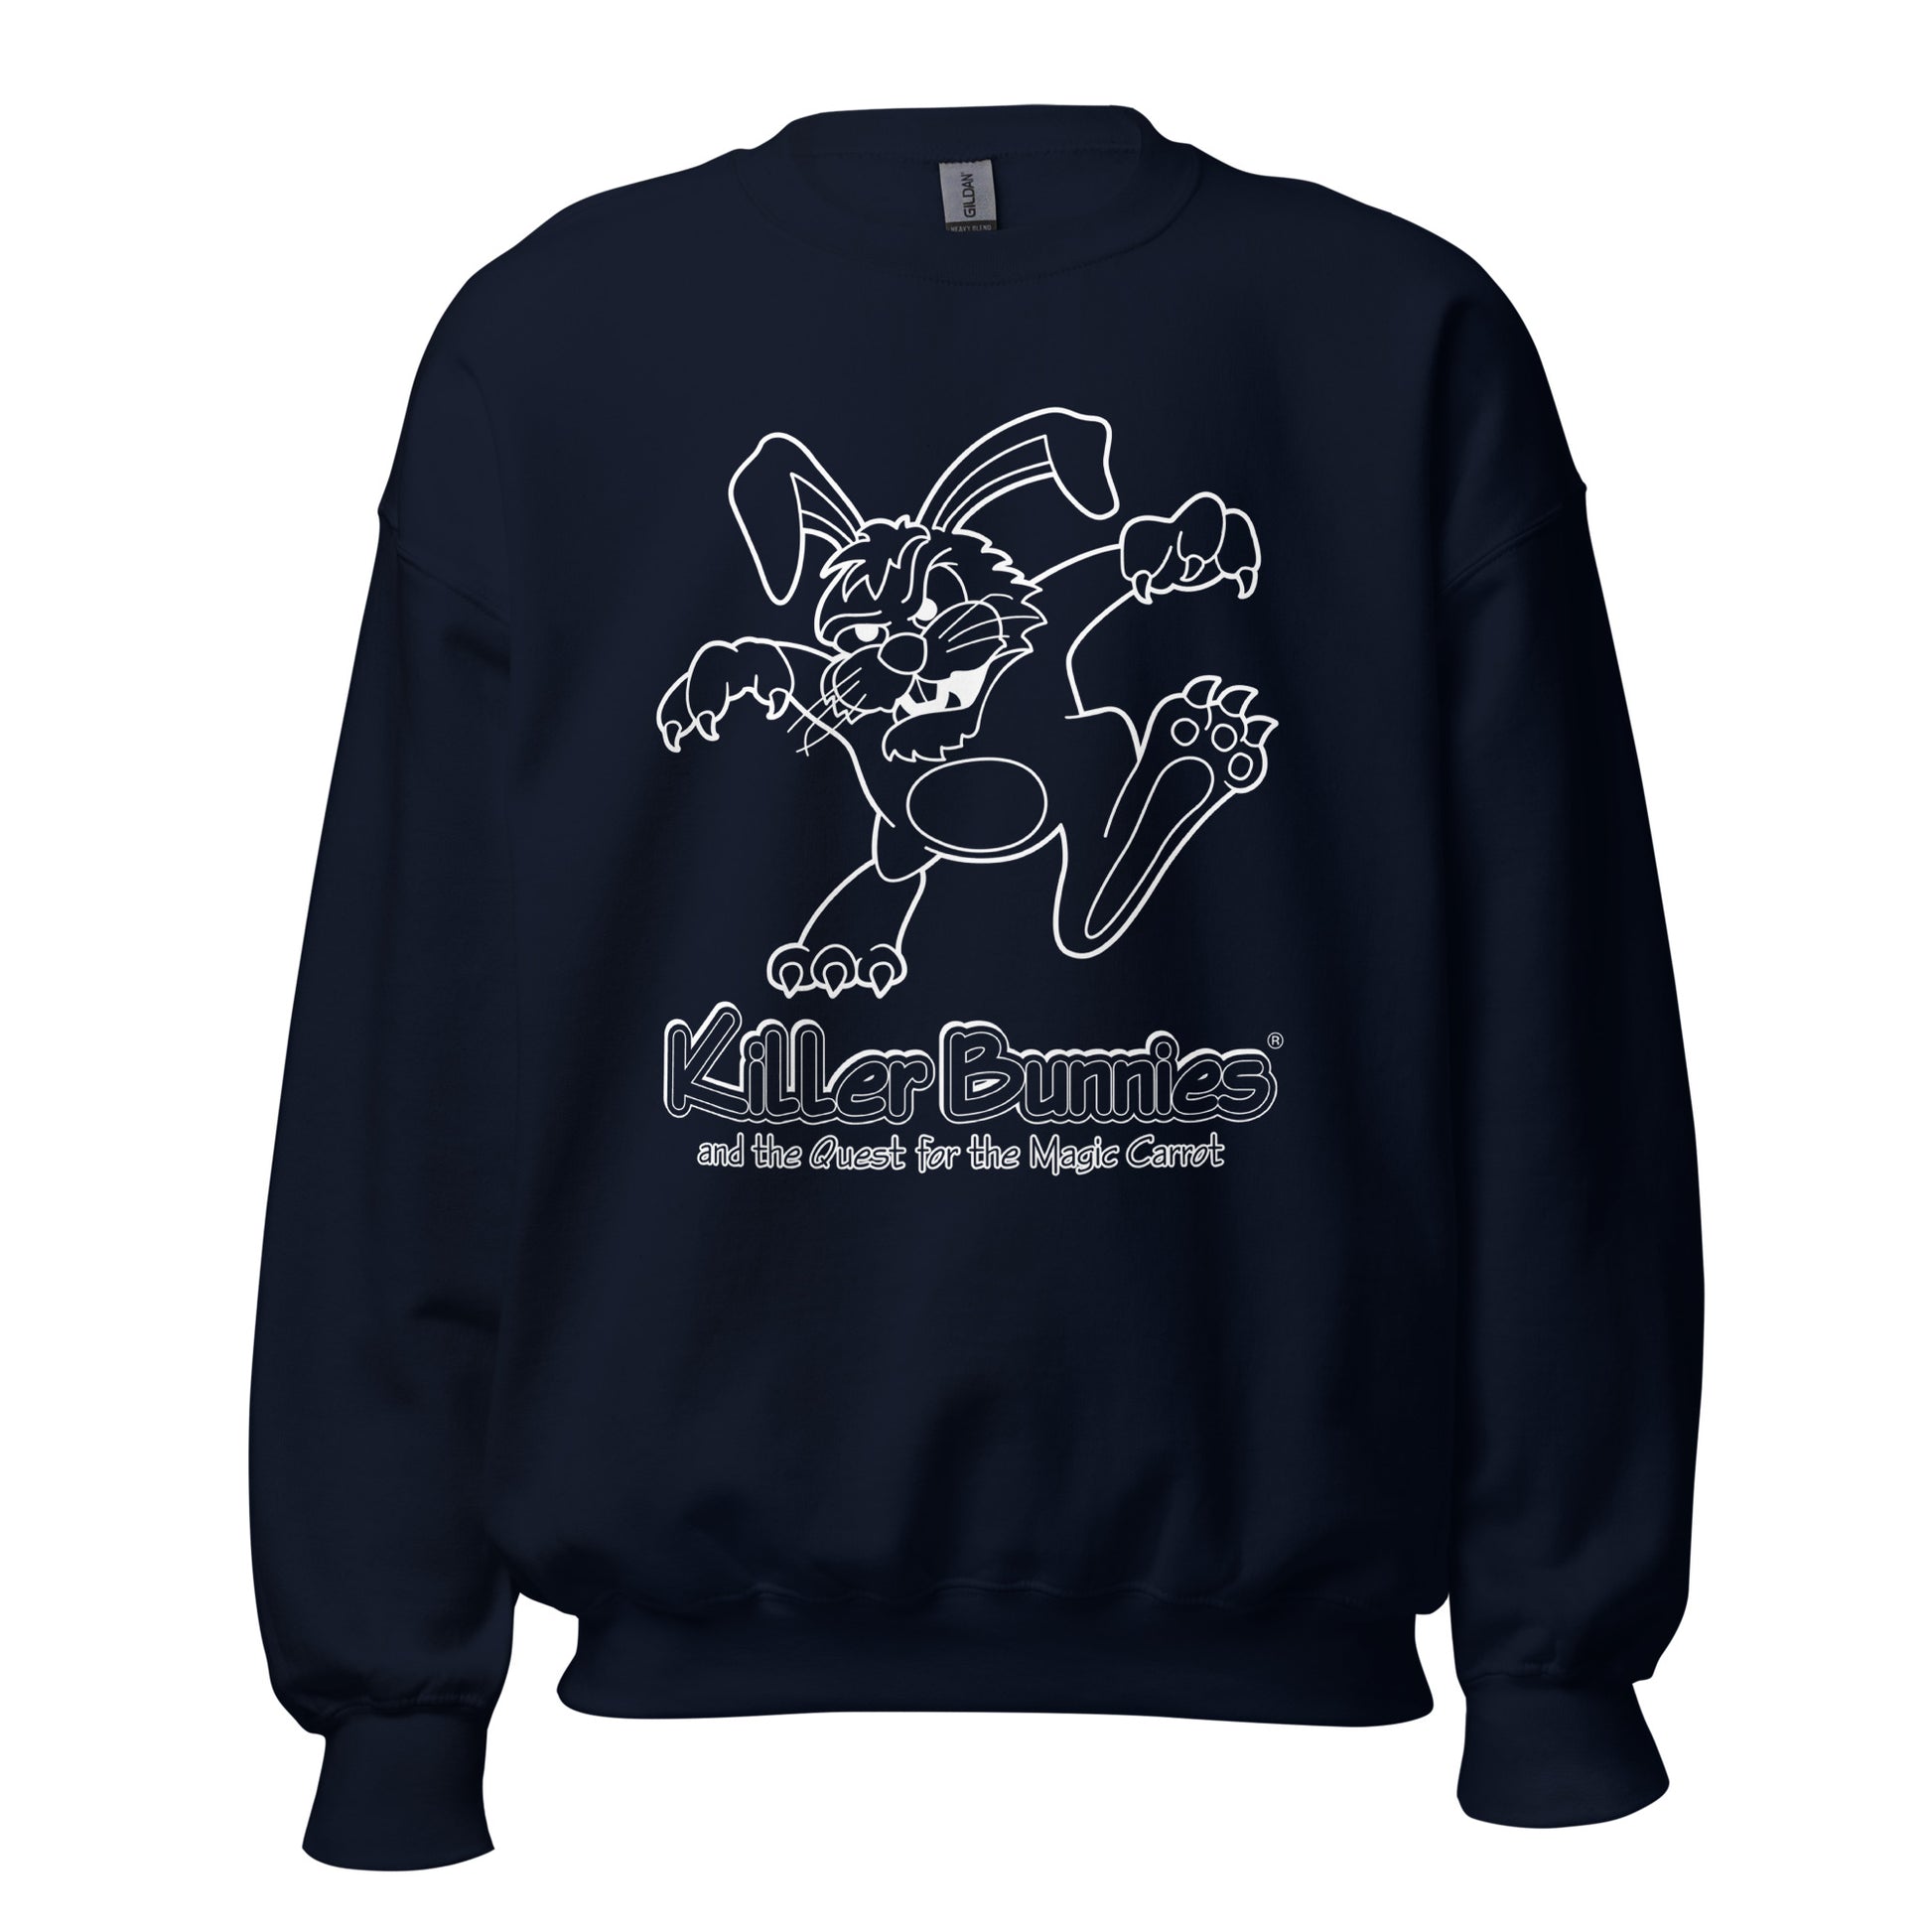 Killer Bunnies Illuminated Unisex Sweatshirt - Navy